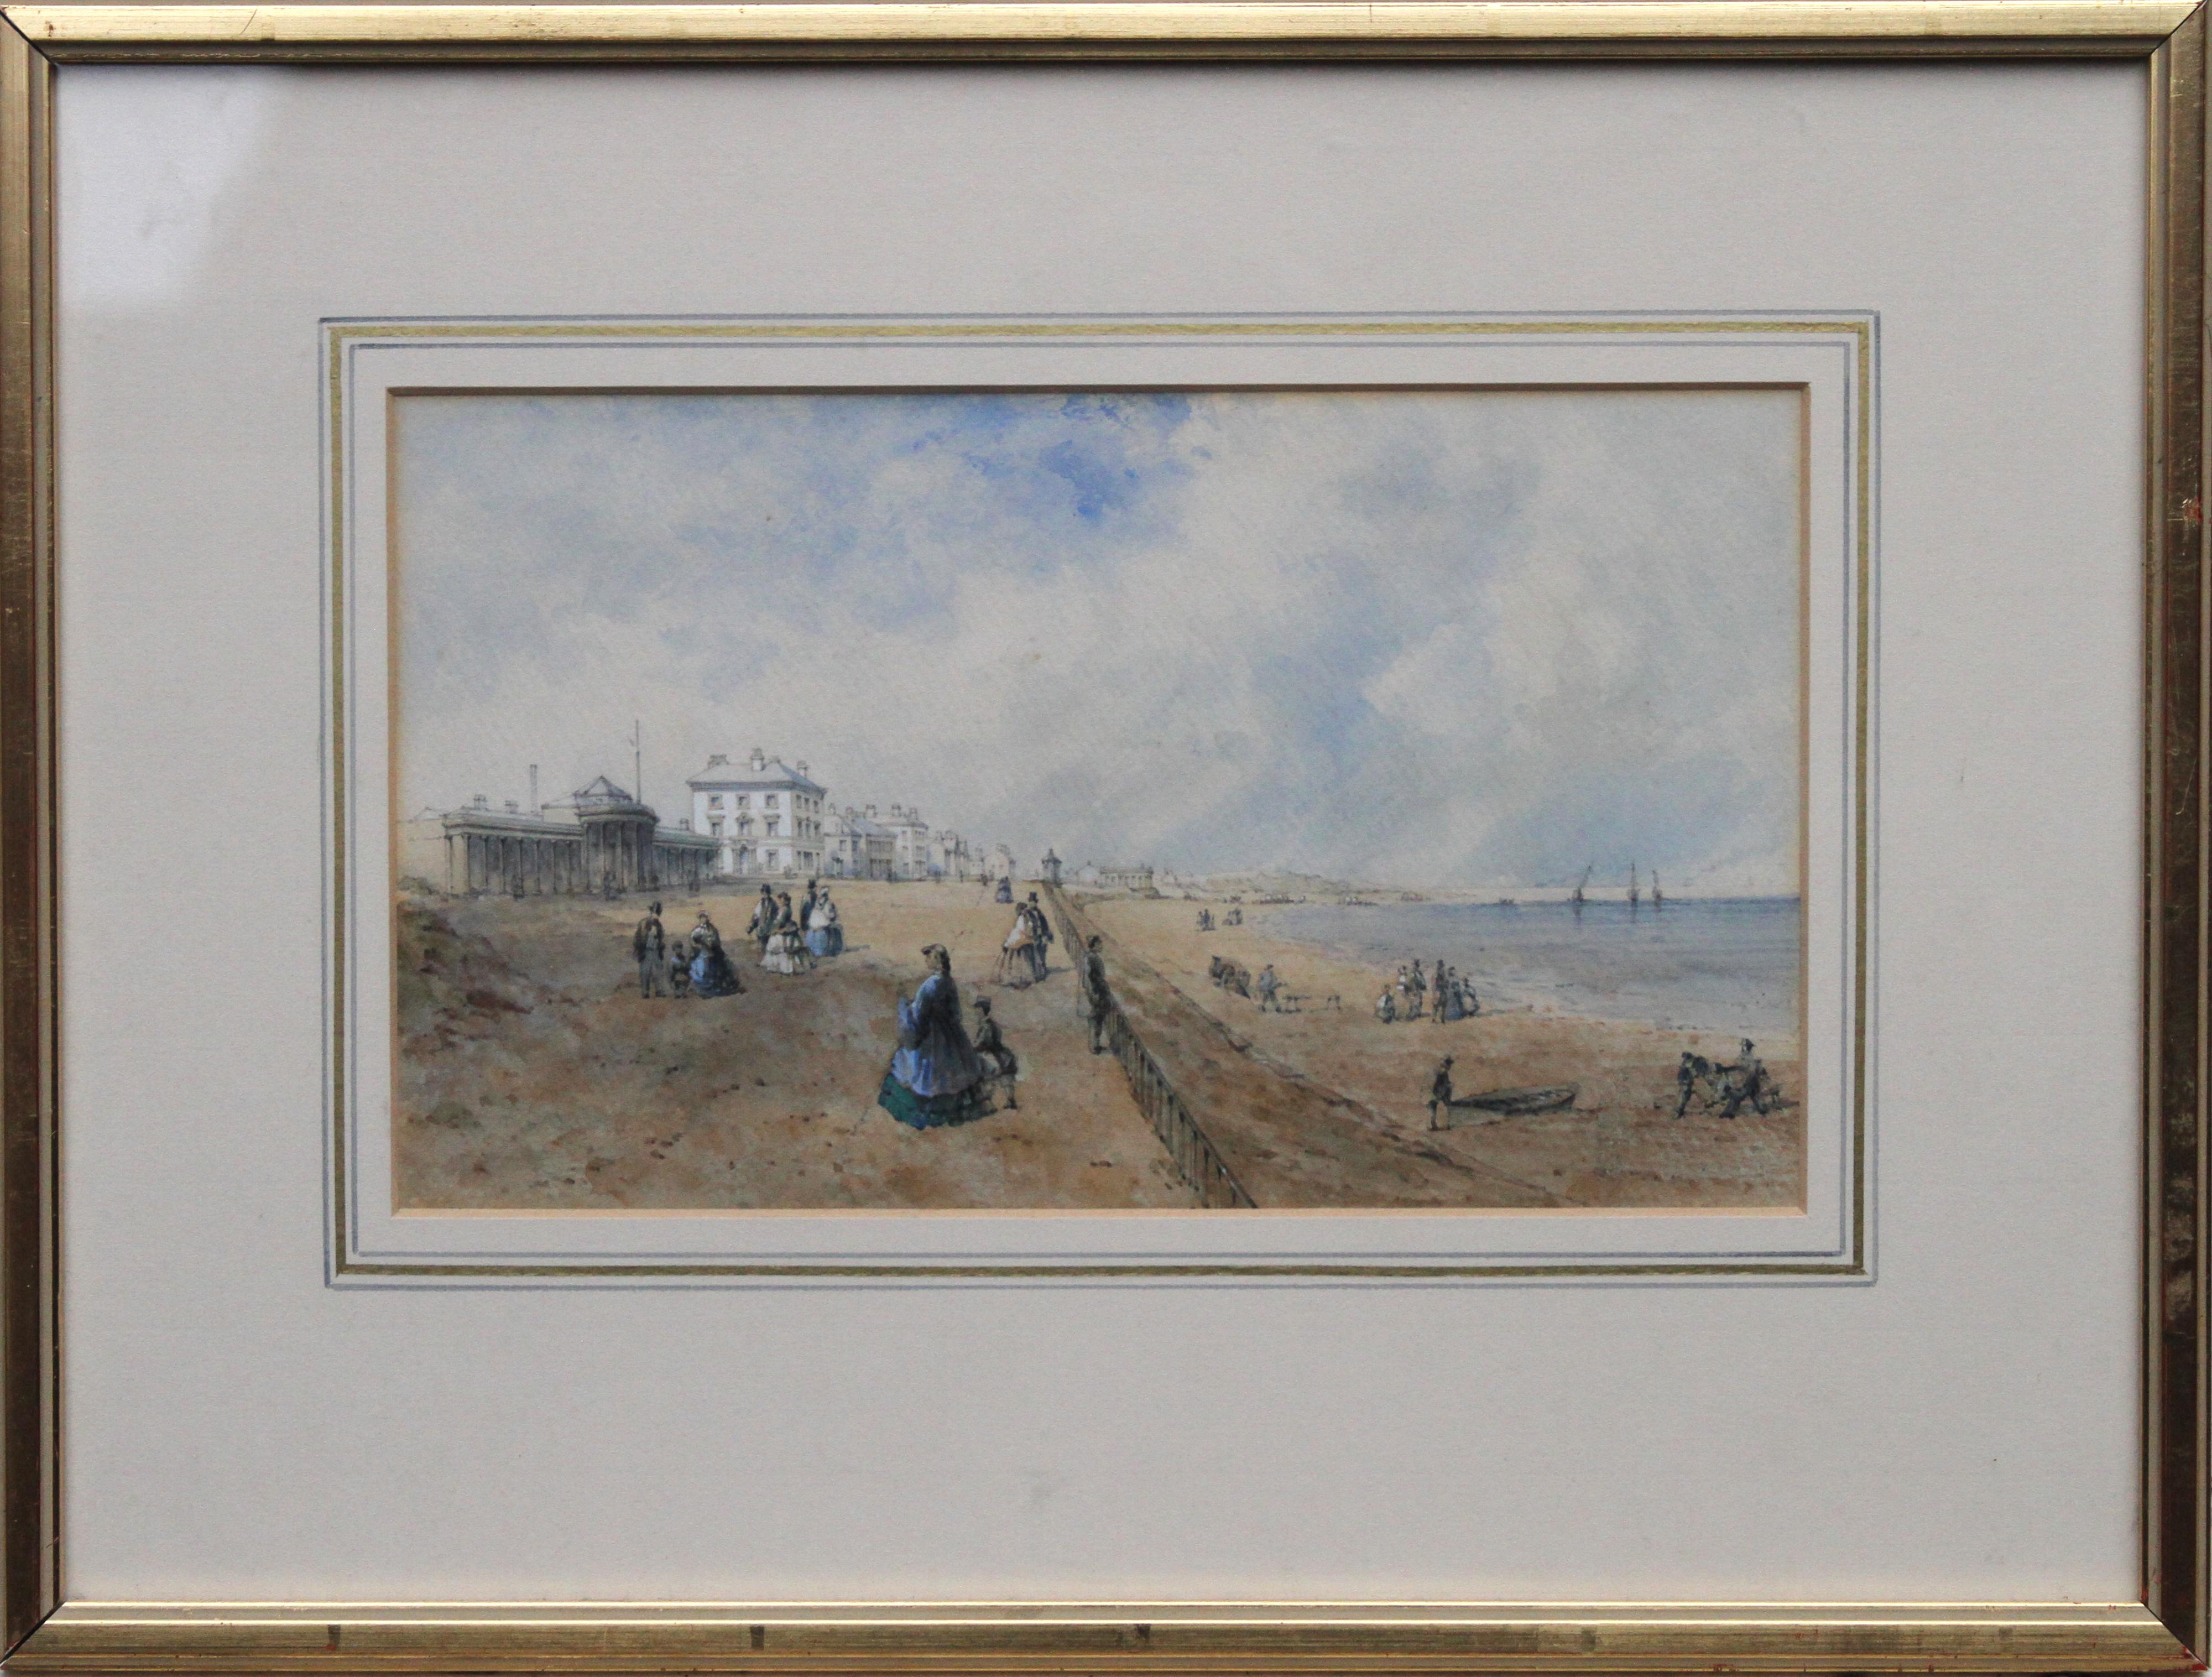 Unknown Figurative Art - Promenade at Southport - British 19th century art coastal landscape watercolour